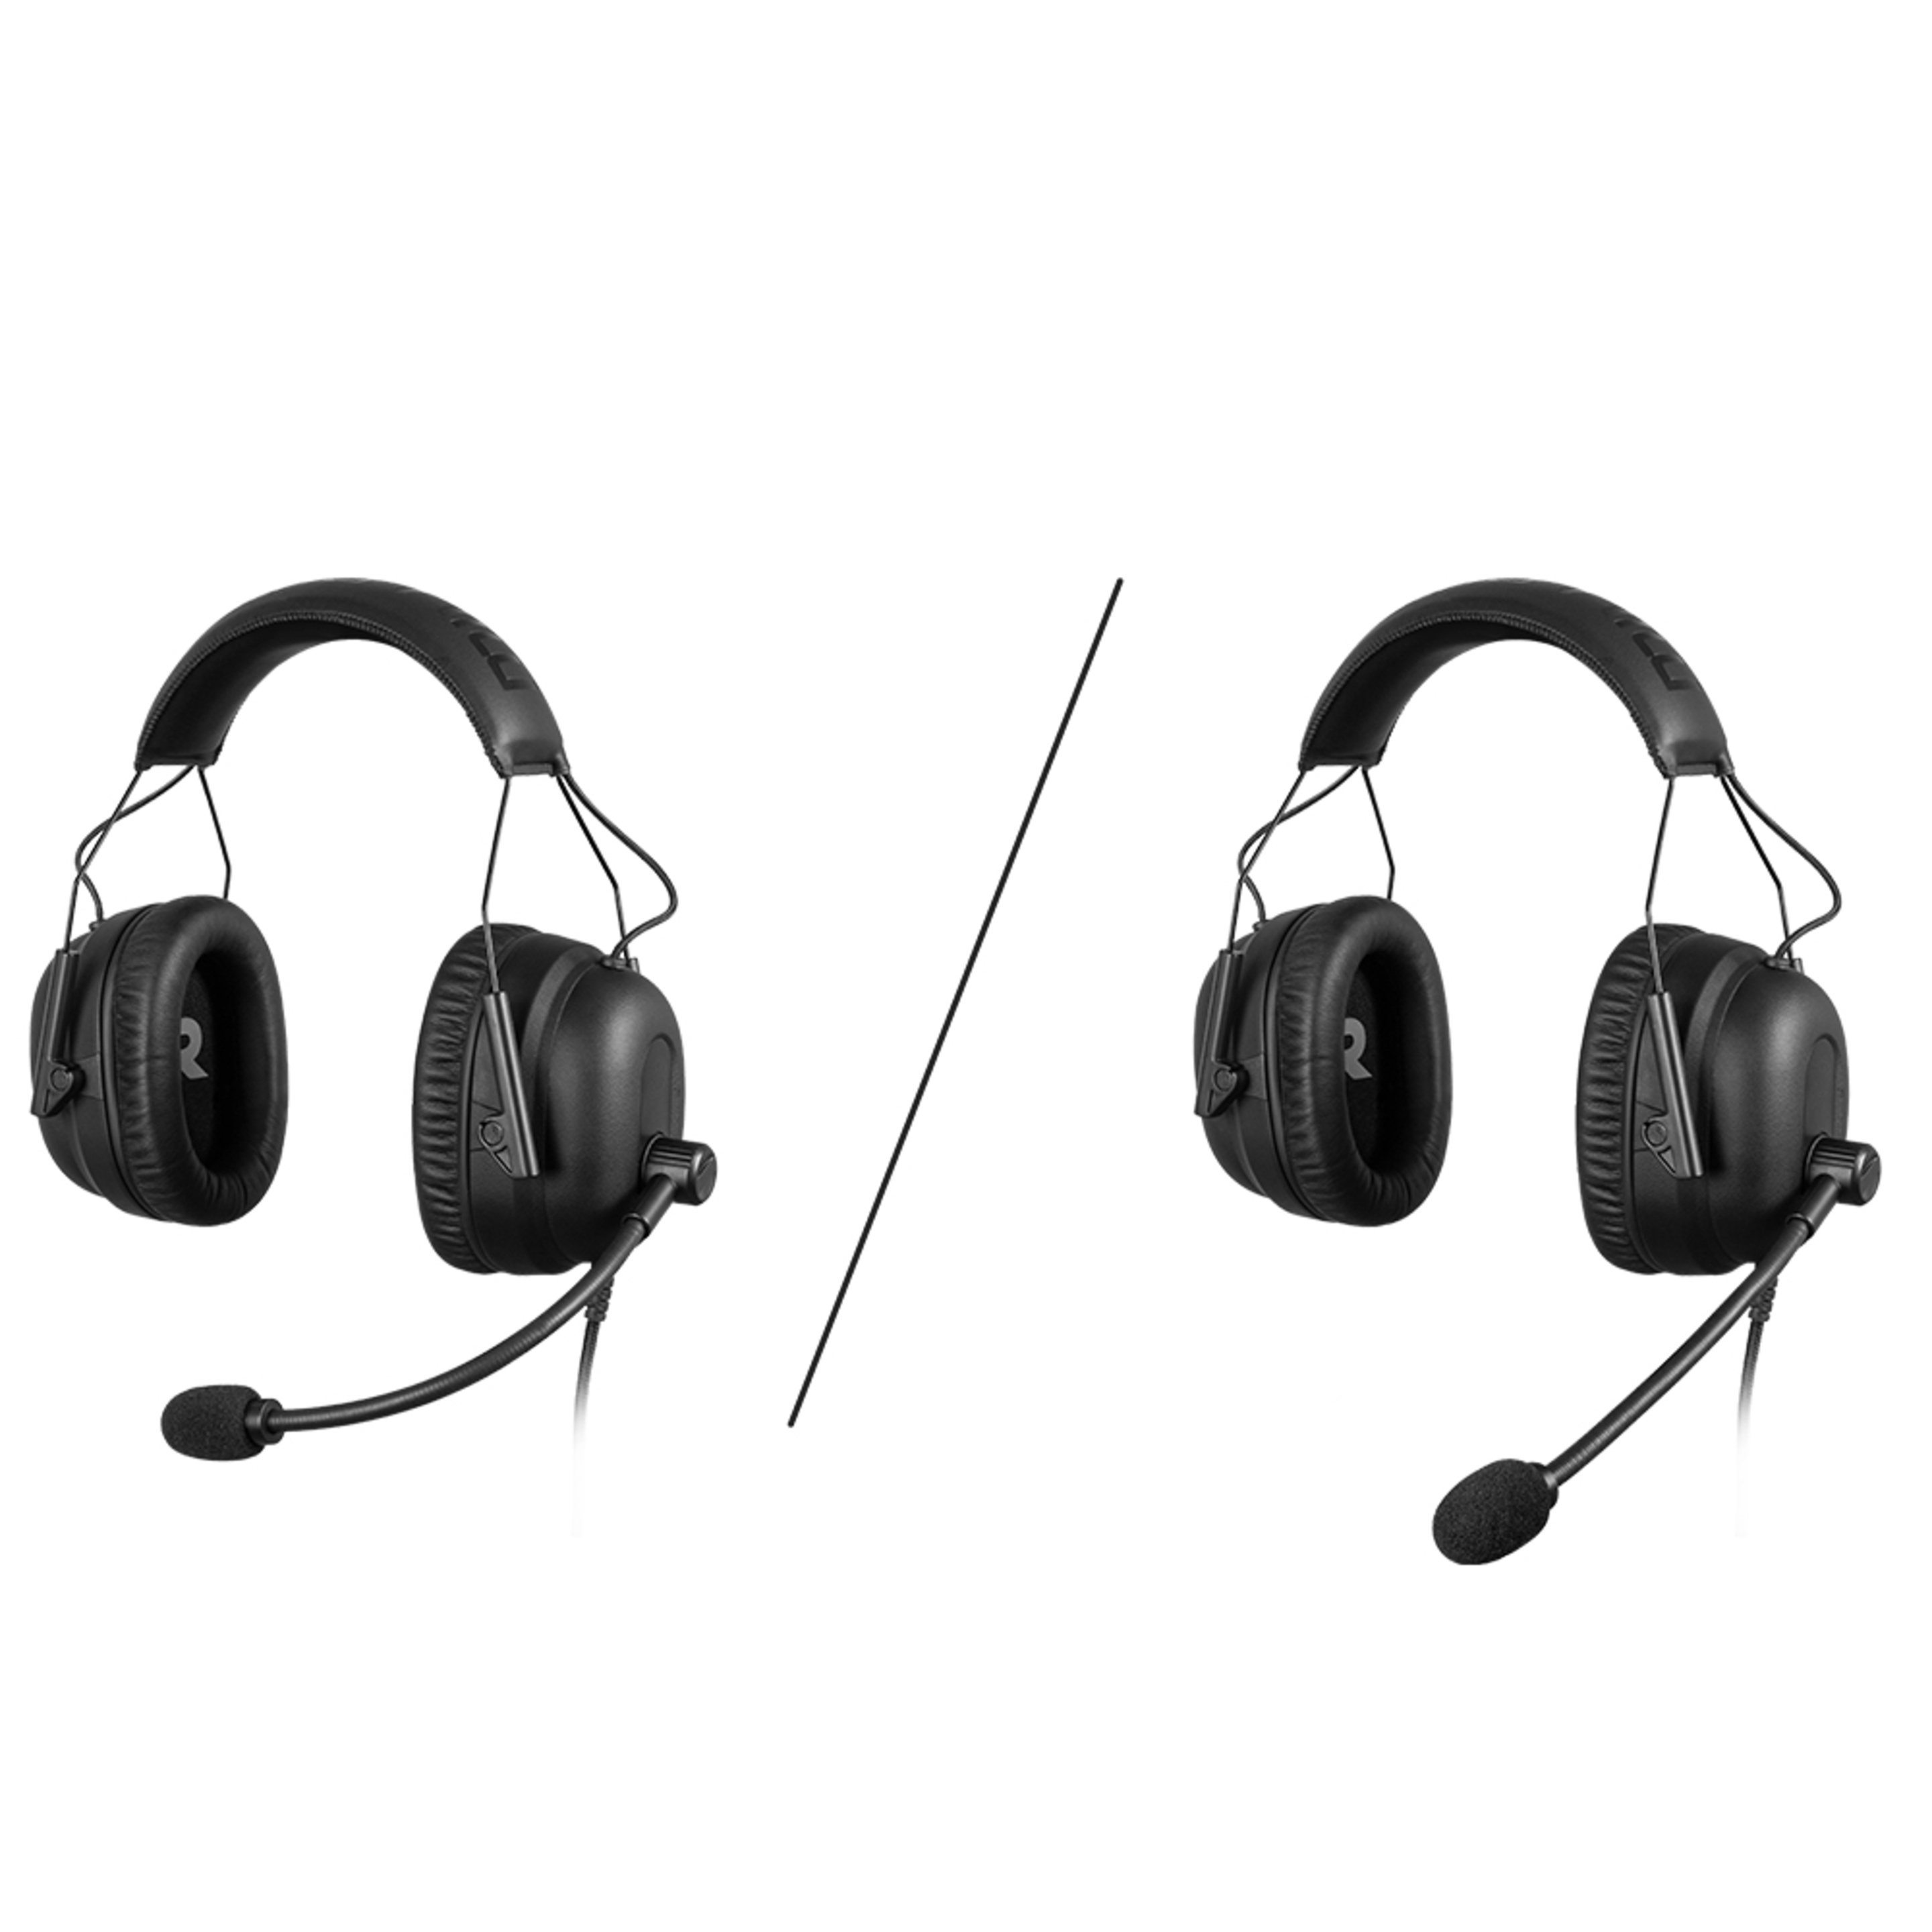 Millenium Headset 3, Auriculares Gaming Con Sorround 7.1